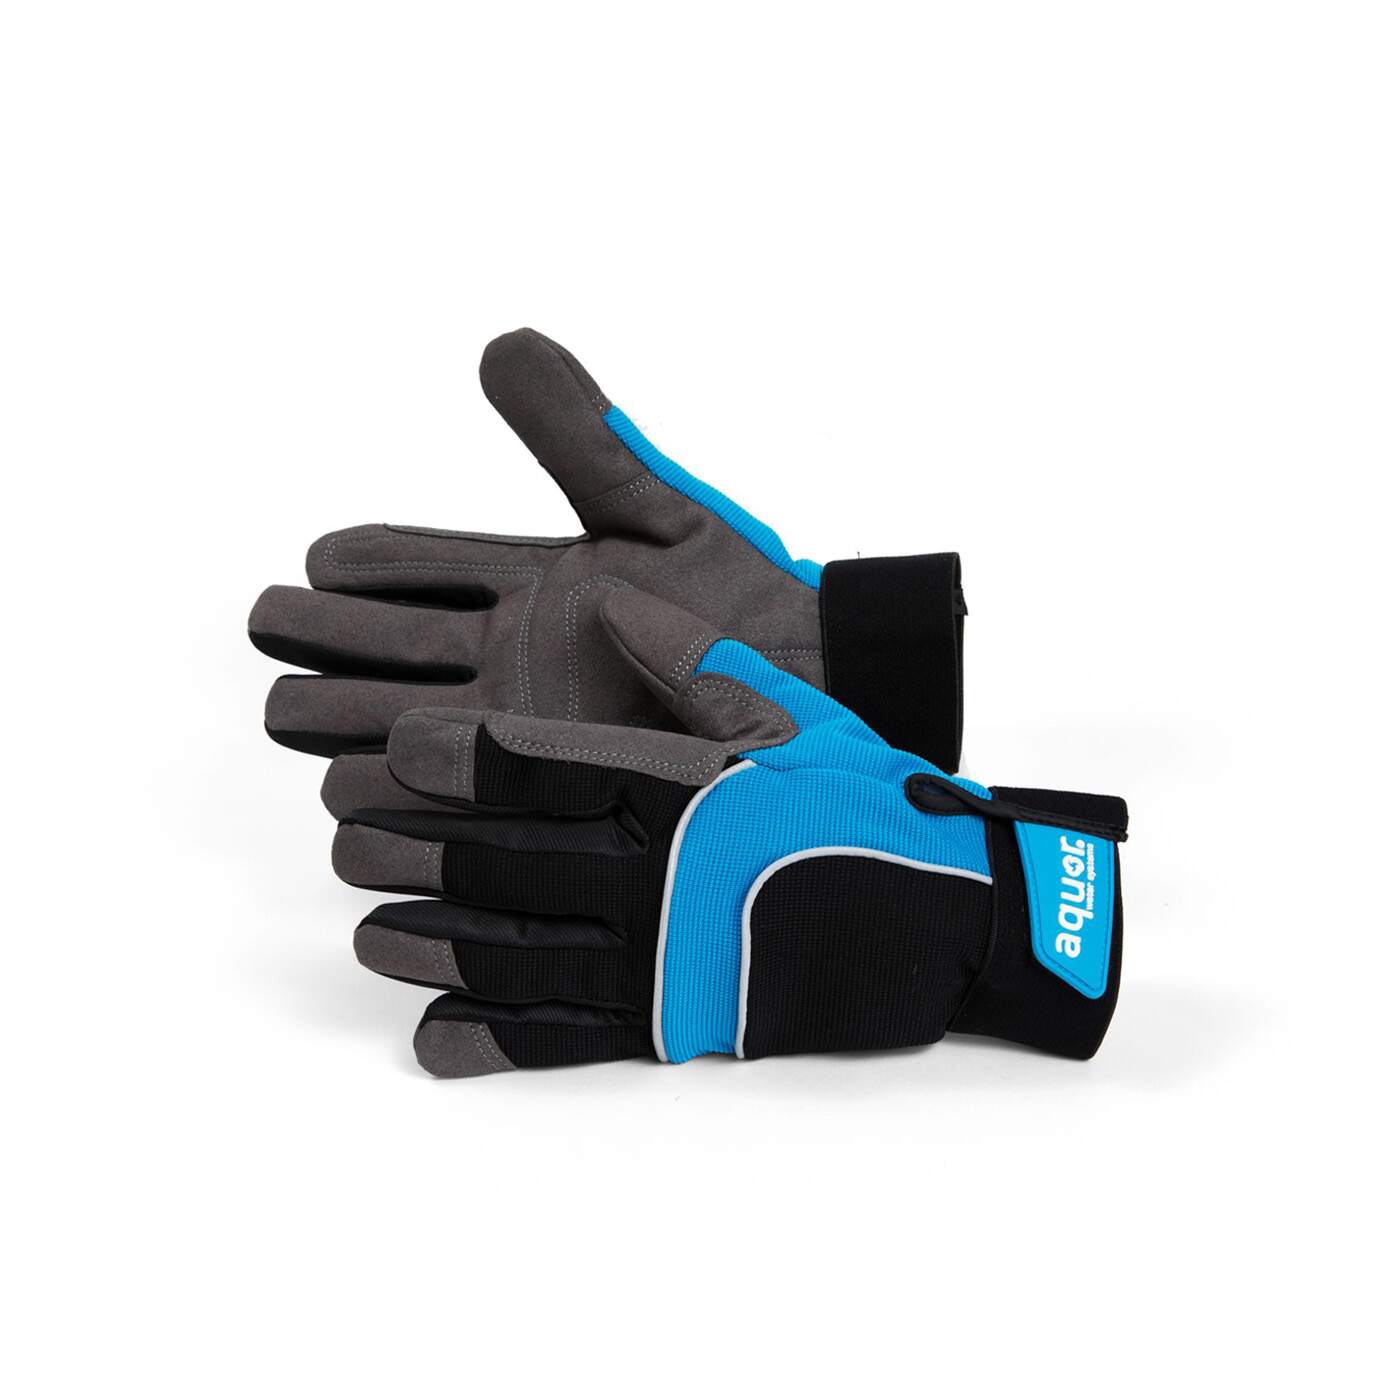 Aquor heavy-duty utility gloves